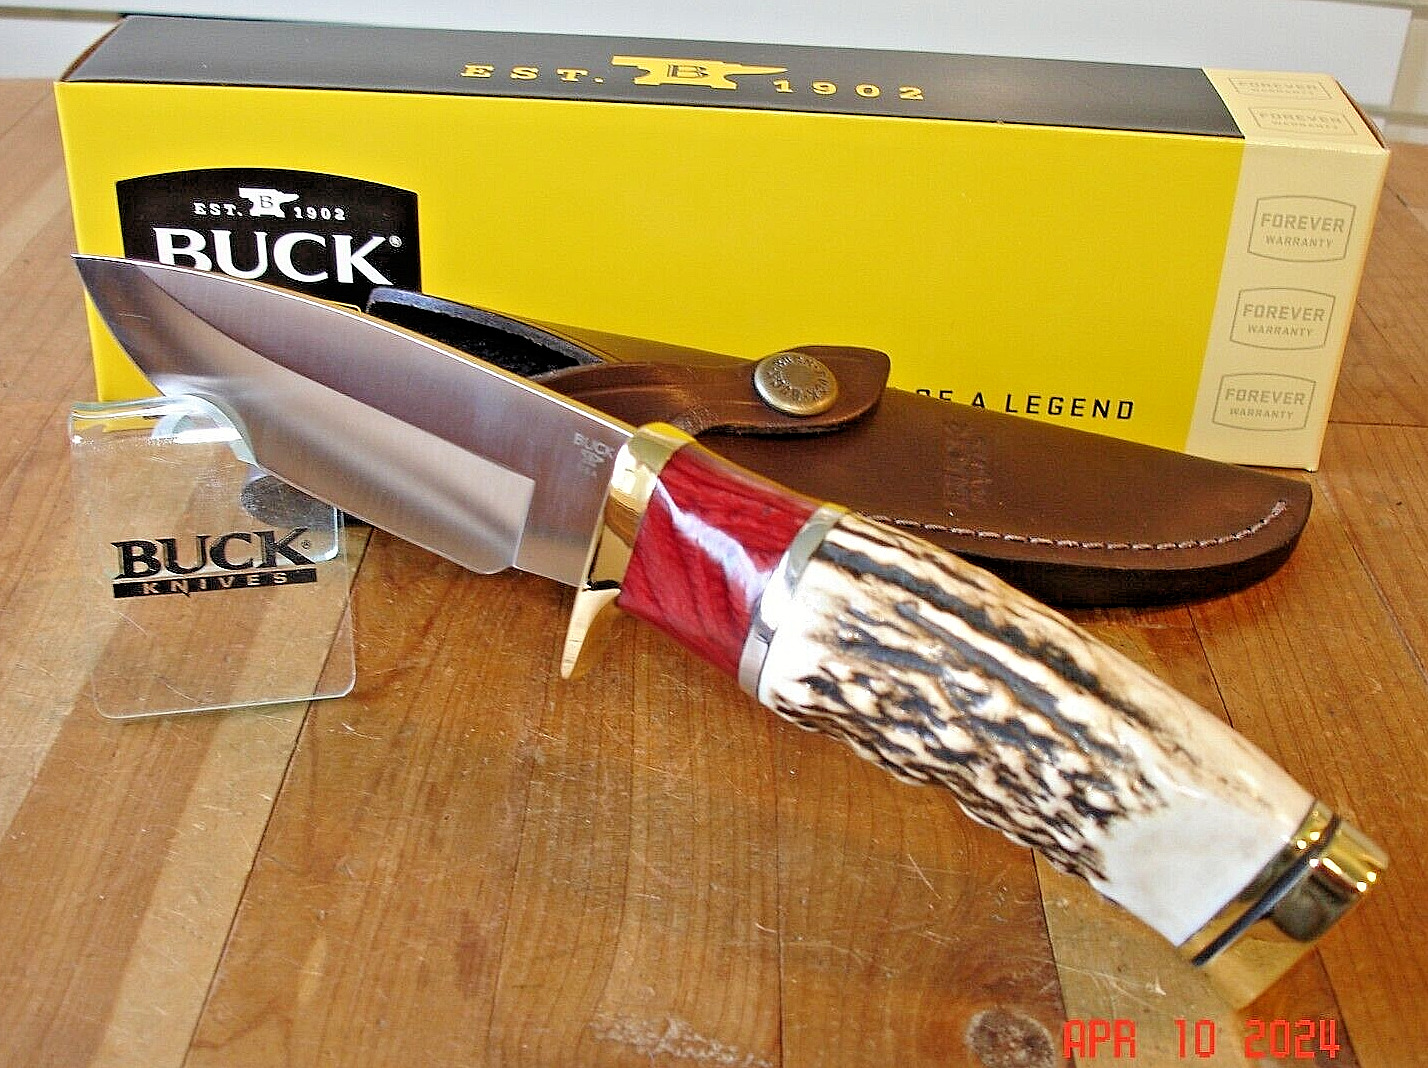 JOE HOUSER CUSTOM BUCK KNIFE 192 VANGUARD BOS S30V BLADE ELK ANTLER HANDLE